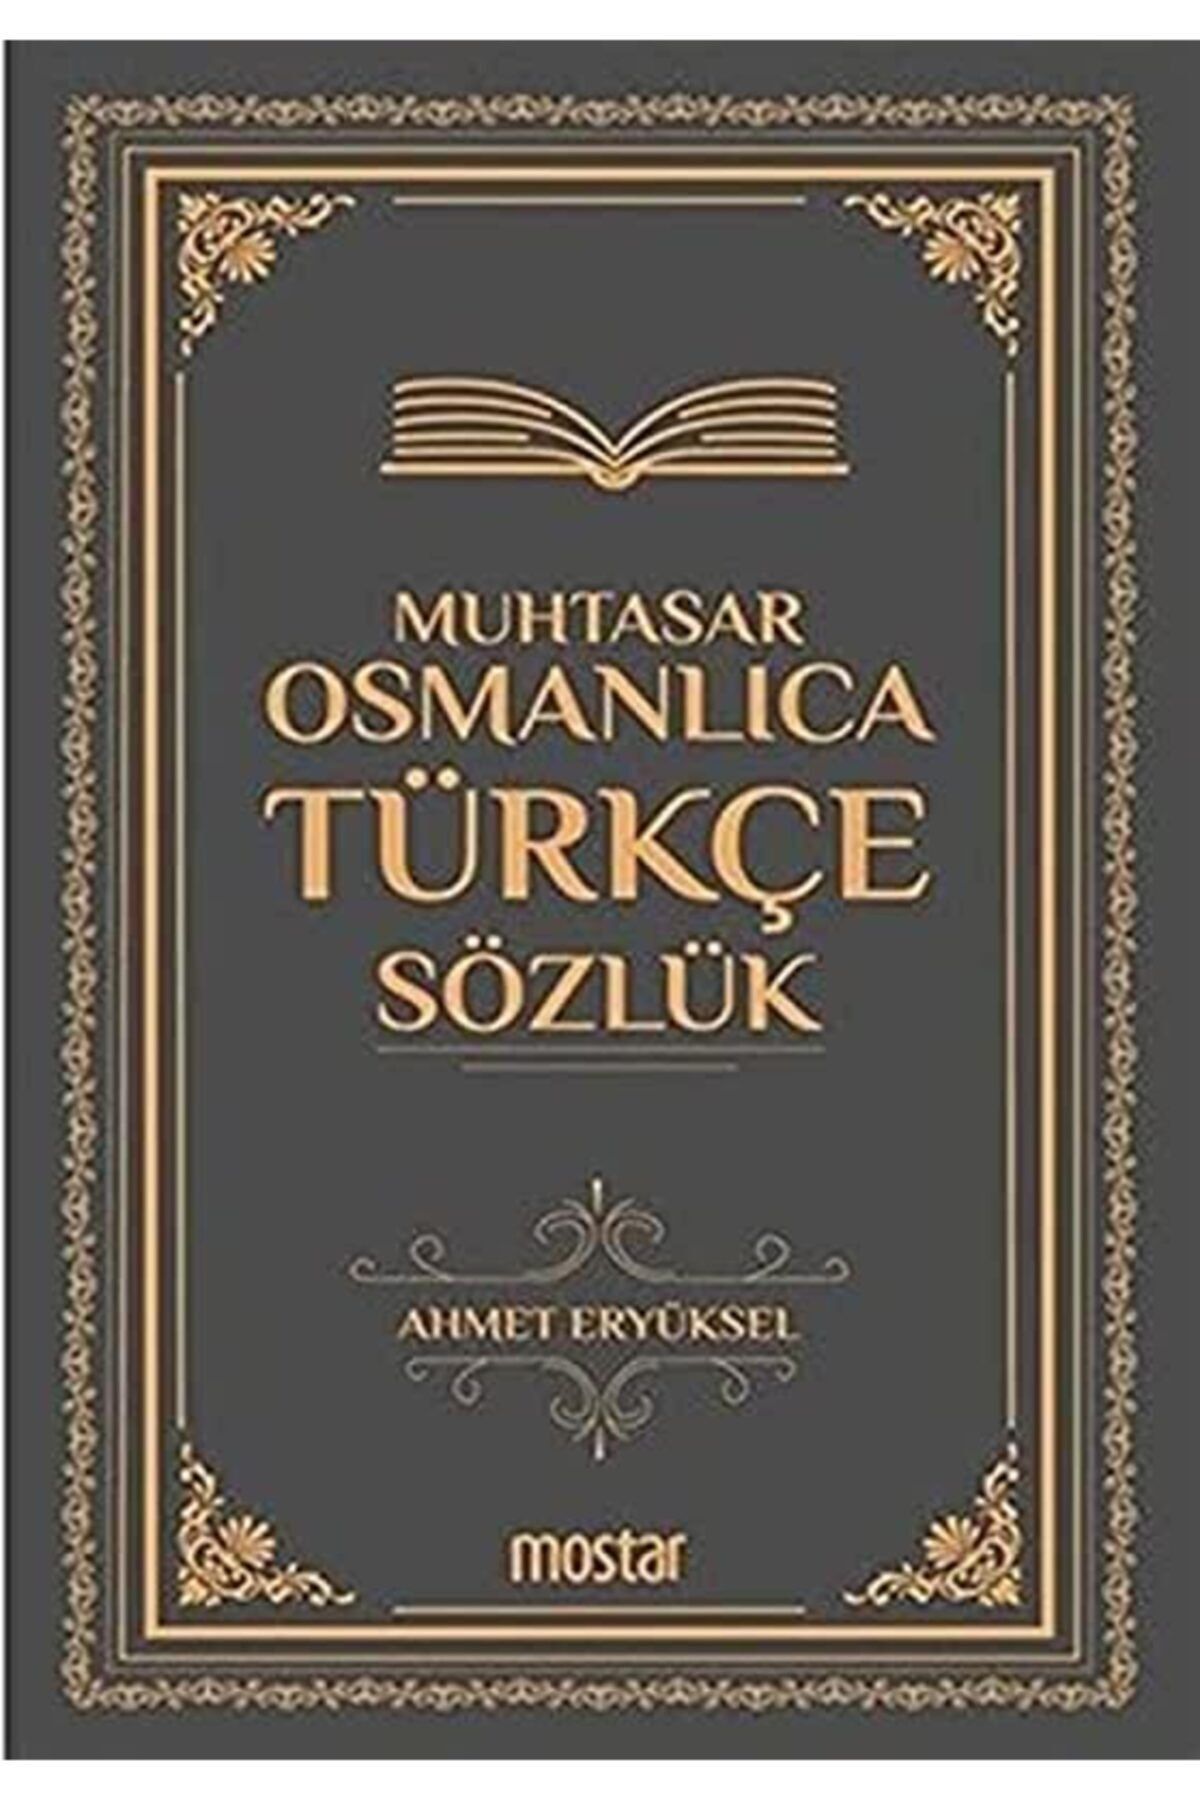 Mostar Muhtasar Osmanlıca Türkçe Sözlük